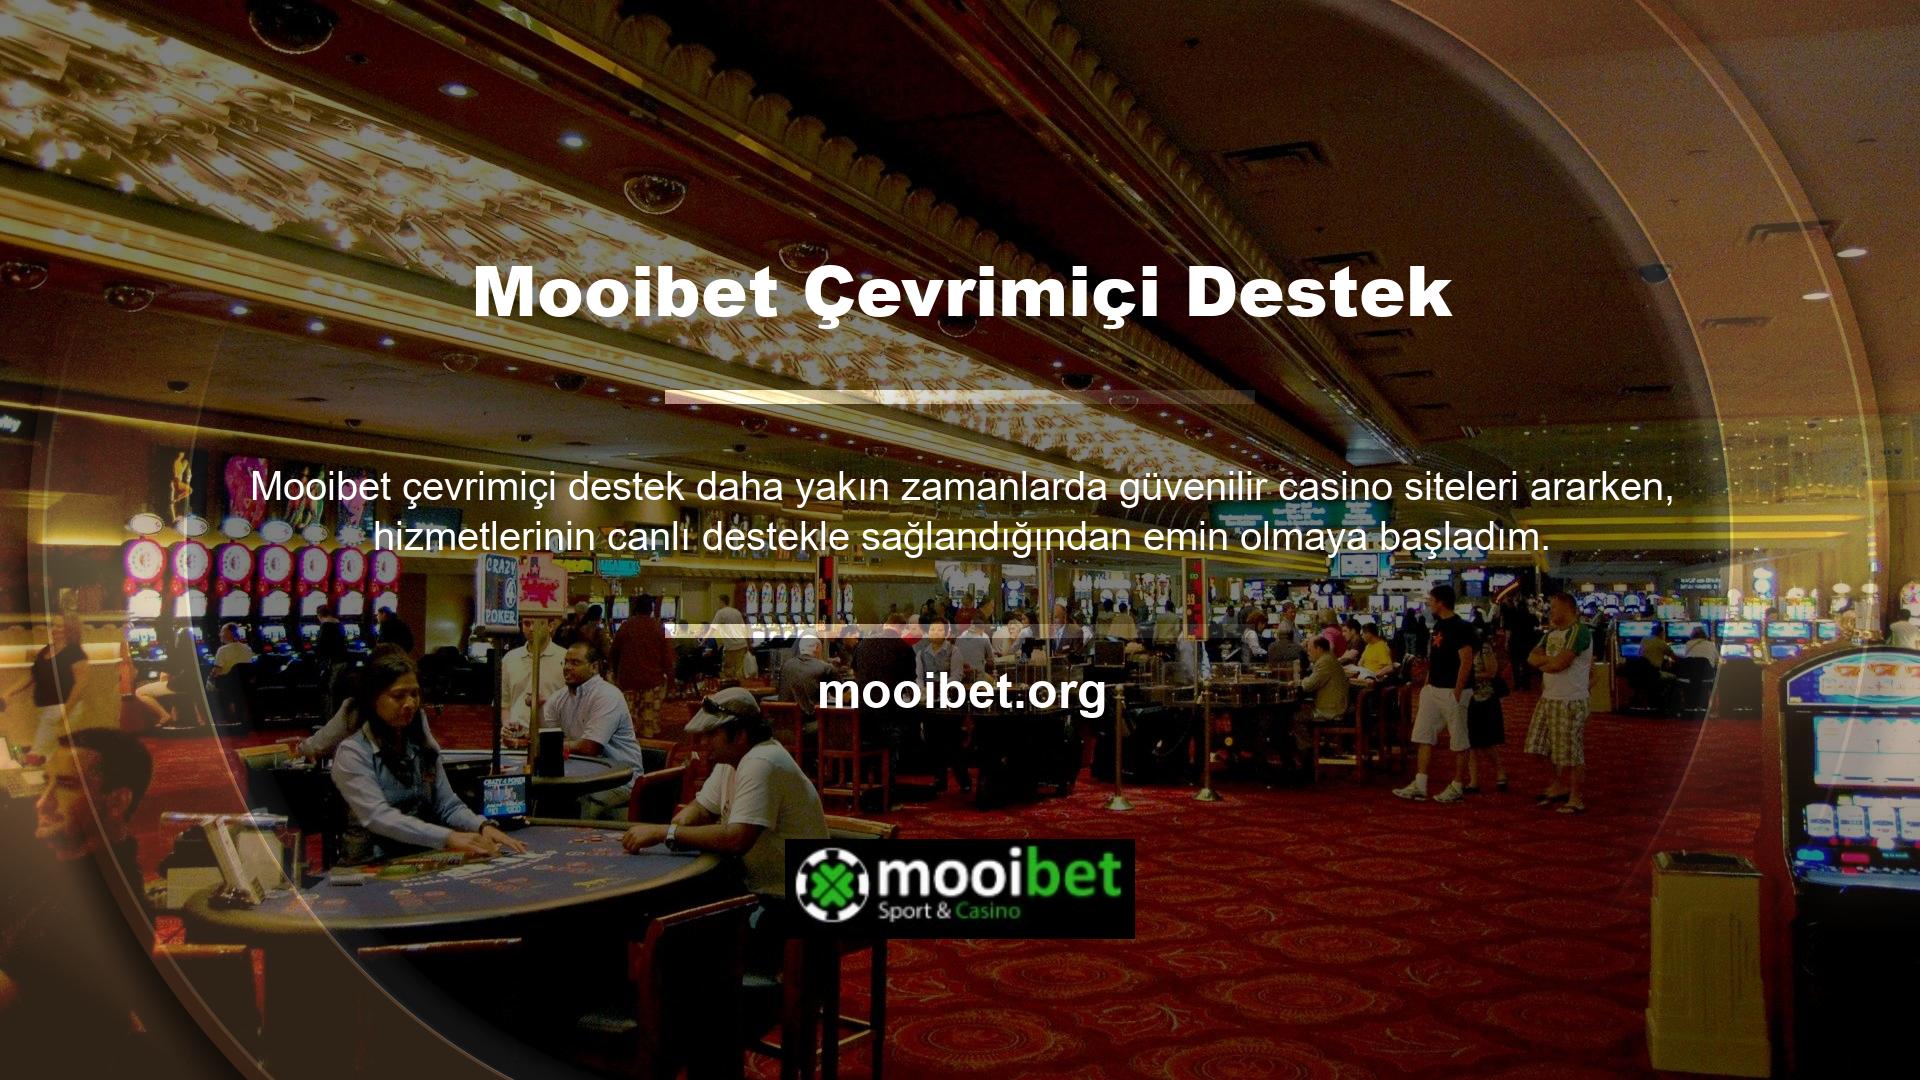 Bahis siteleri ve canlı müşteri destek hatları için her zaman önemli olan Mooibet, 7/24 destek ekibi kurarak işe başlamıştır